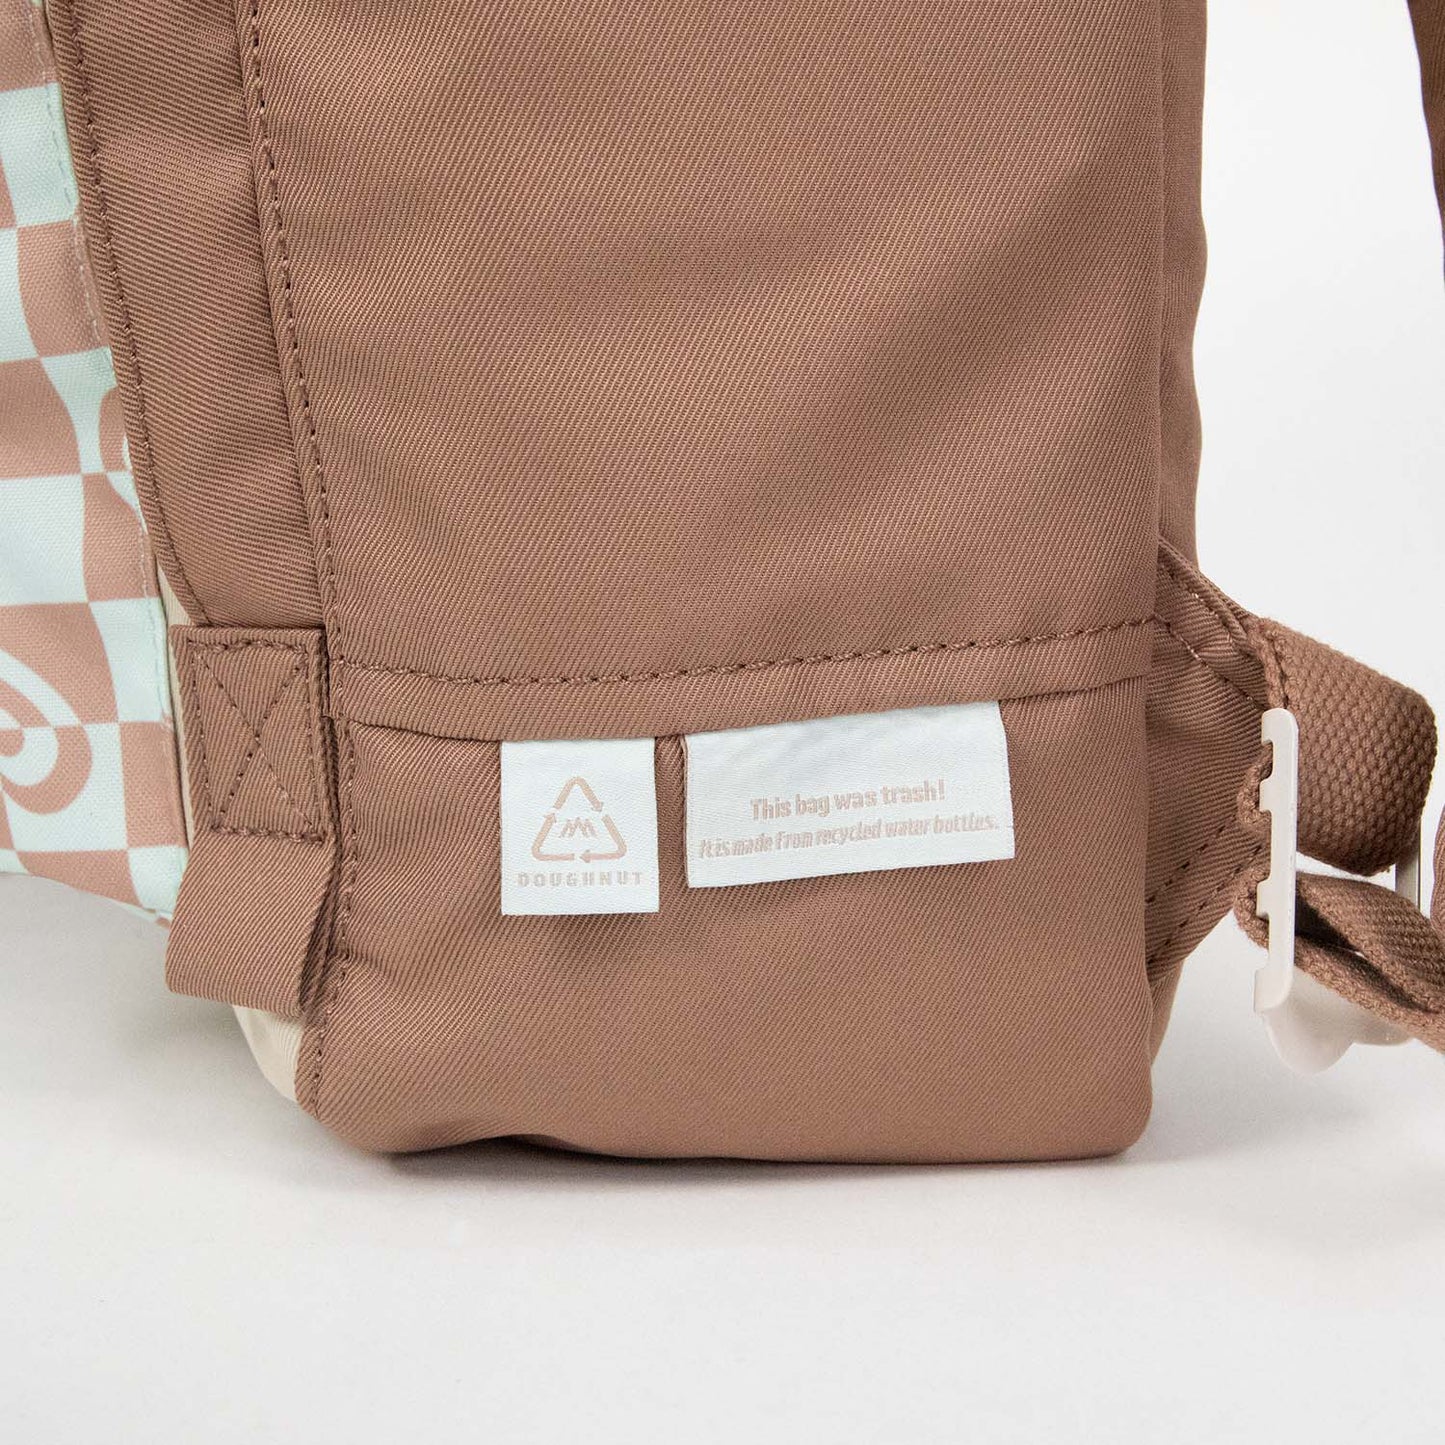 Macaroon Kaleido Series Backpack